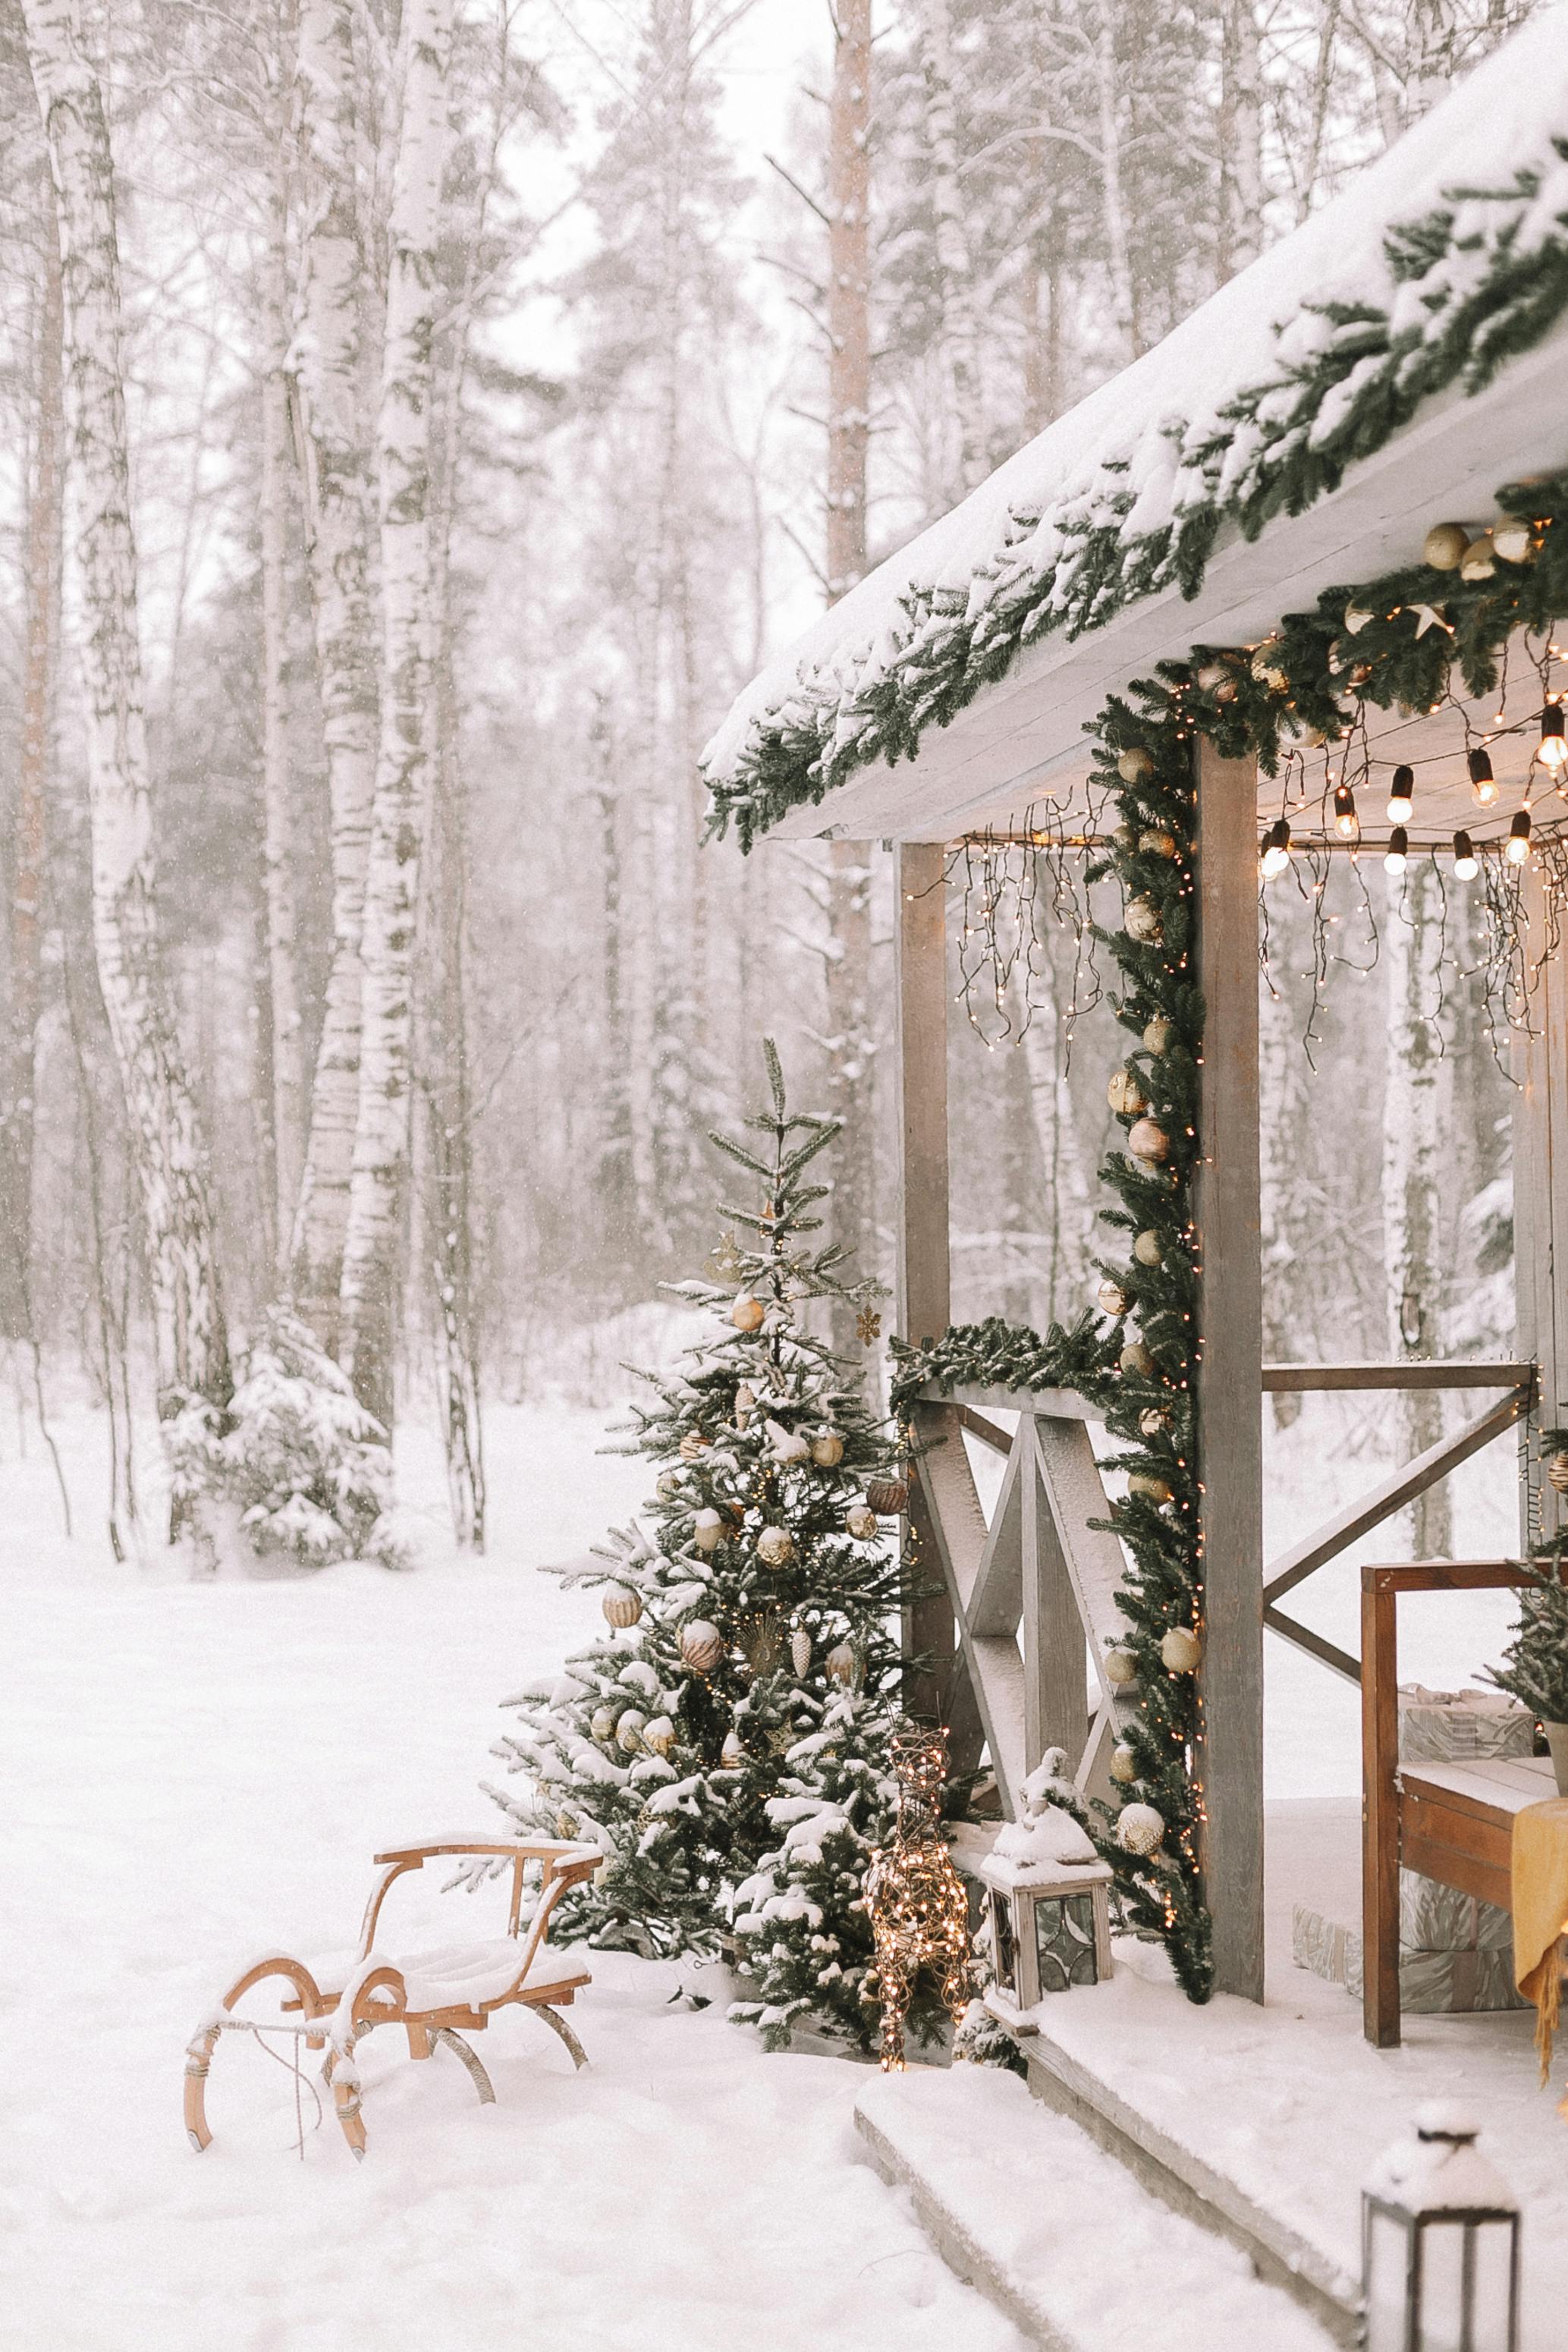 Hãy cùng chiêm ngưỡng những hình ảnh cực kỳ đáng yêu về những ngôi nhà được trang hoàng rực rỡ trong dịp Giáng sinh. Không gian yên bình, tràn đầy niềm vui sẽ khiến bạn cảm thấy ấm áp và thiết tha hơn bao giờ hết.